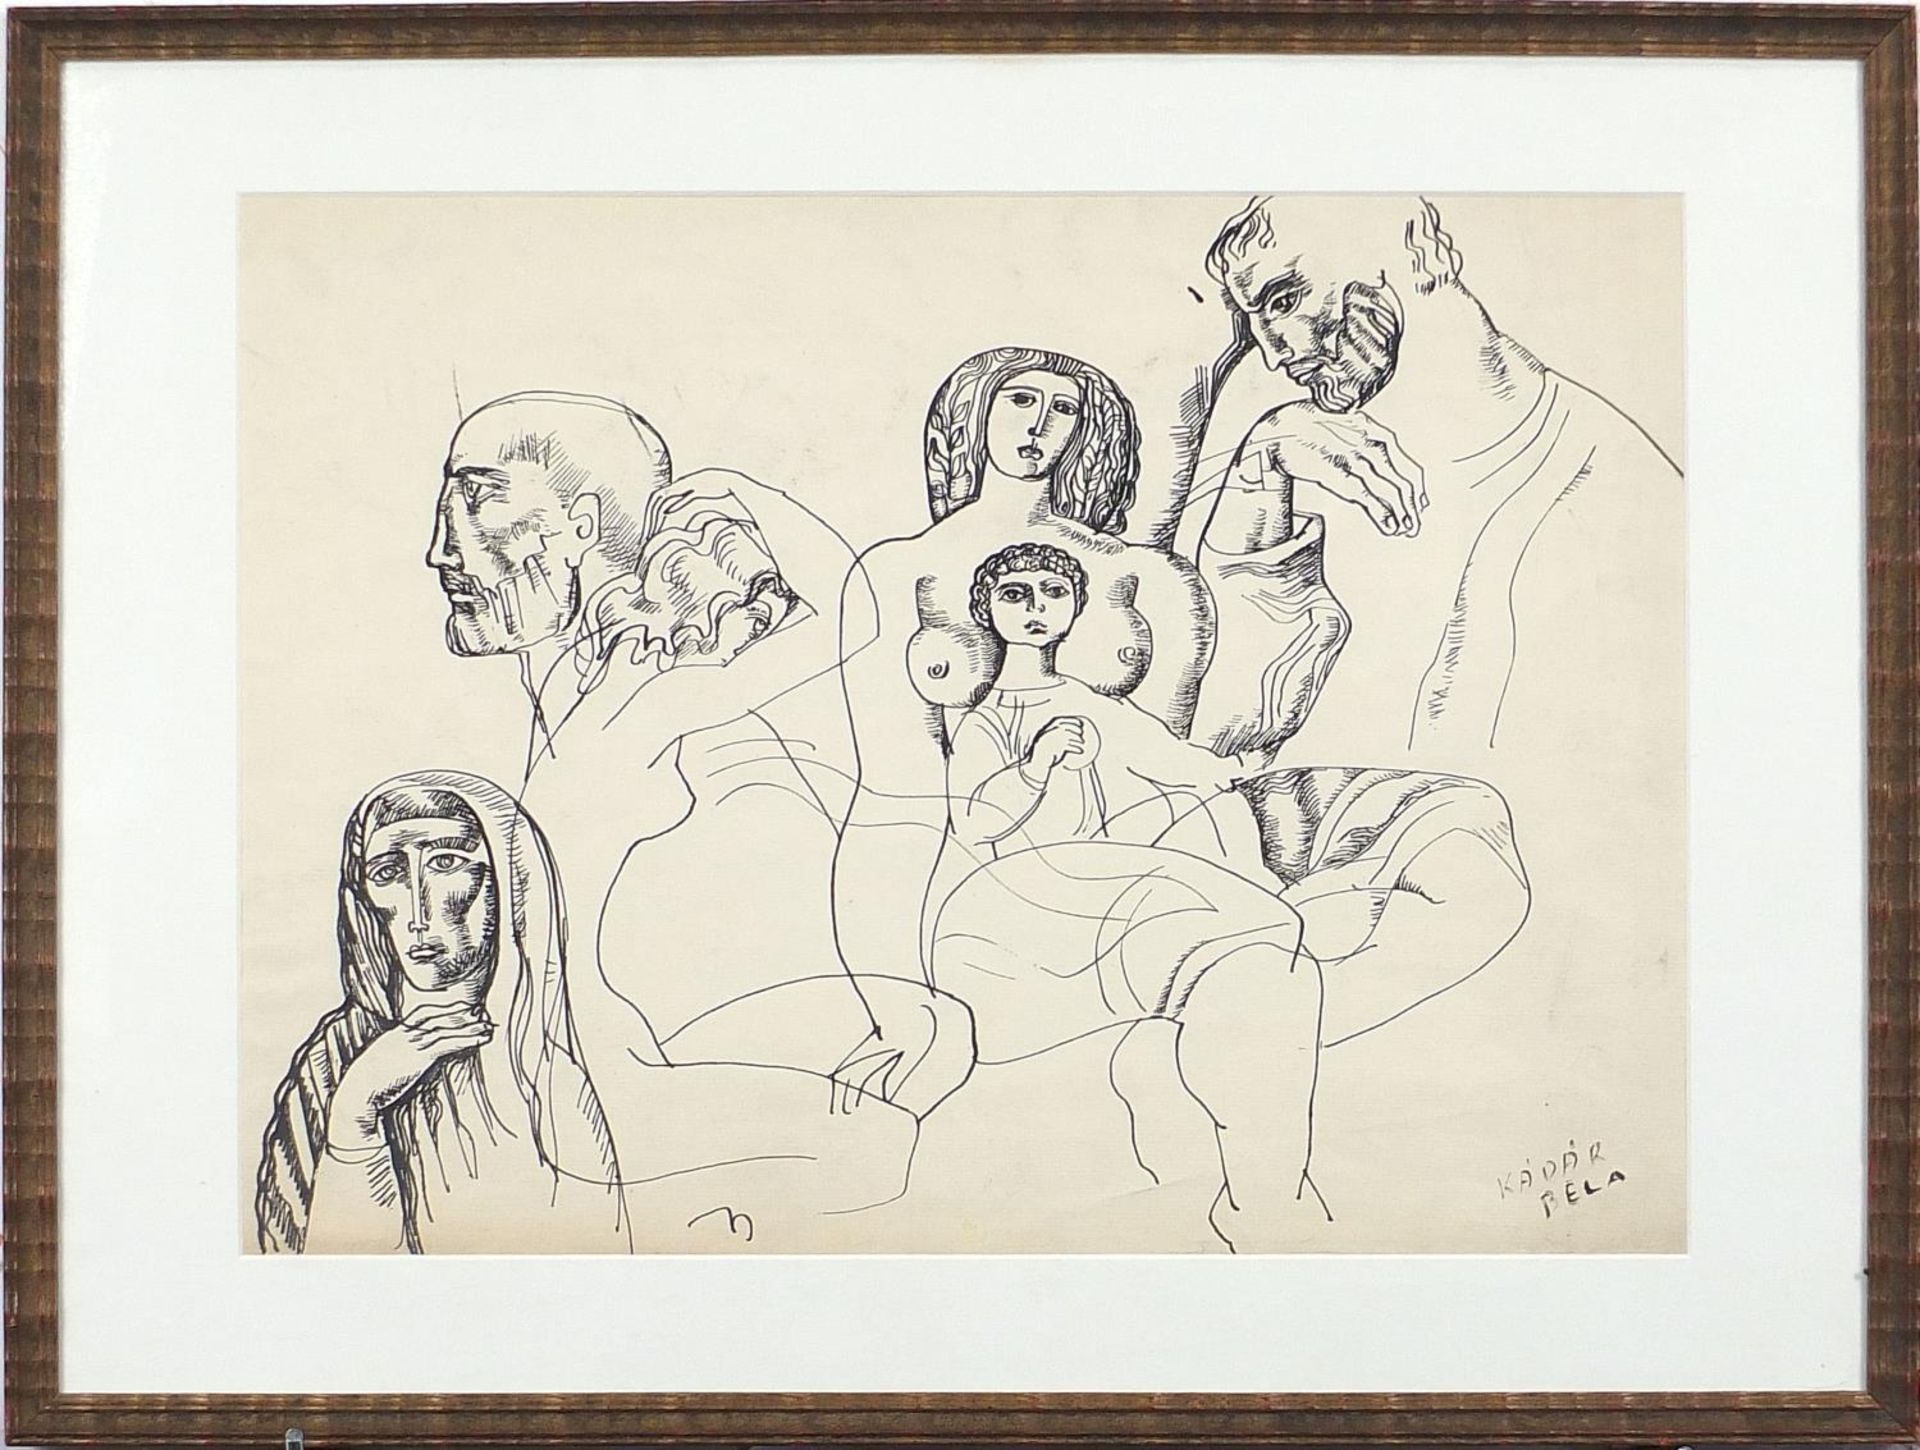 After Bela Kadar - Surreal nude figures, pen and ink, mounted, framed and glazed, 46cm x 34cm - Image 2 of 5